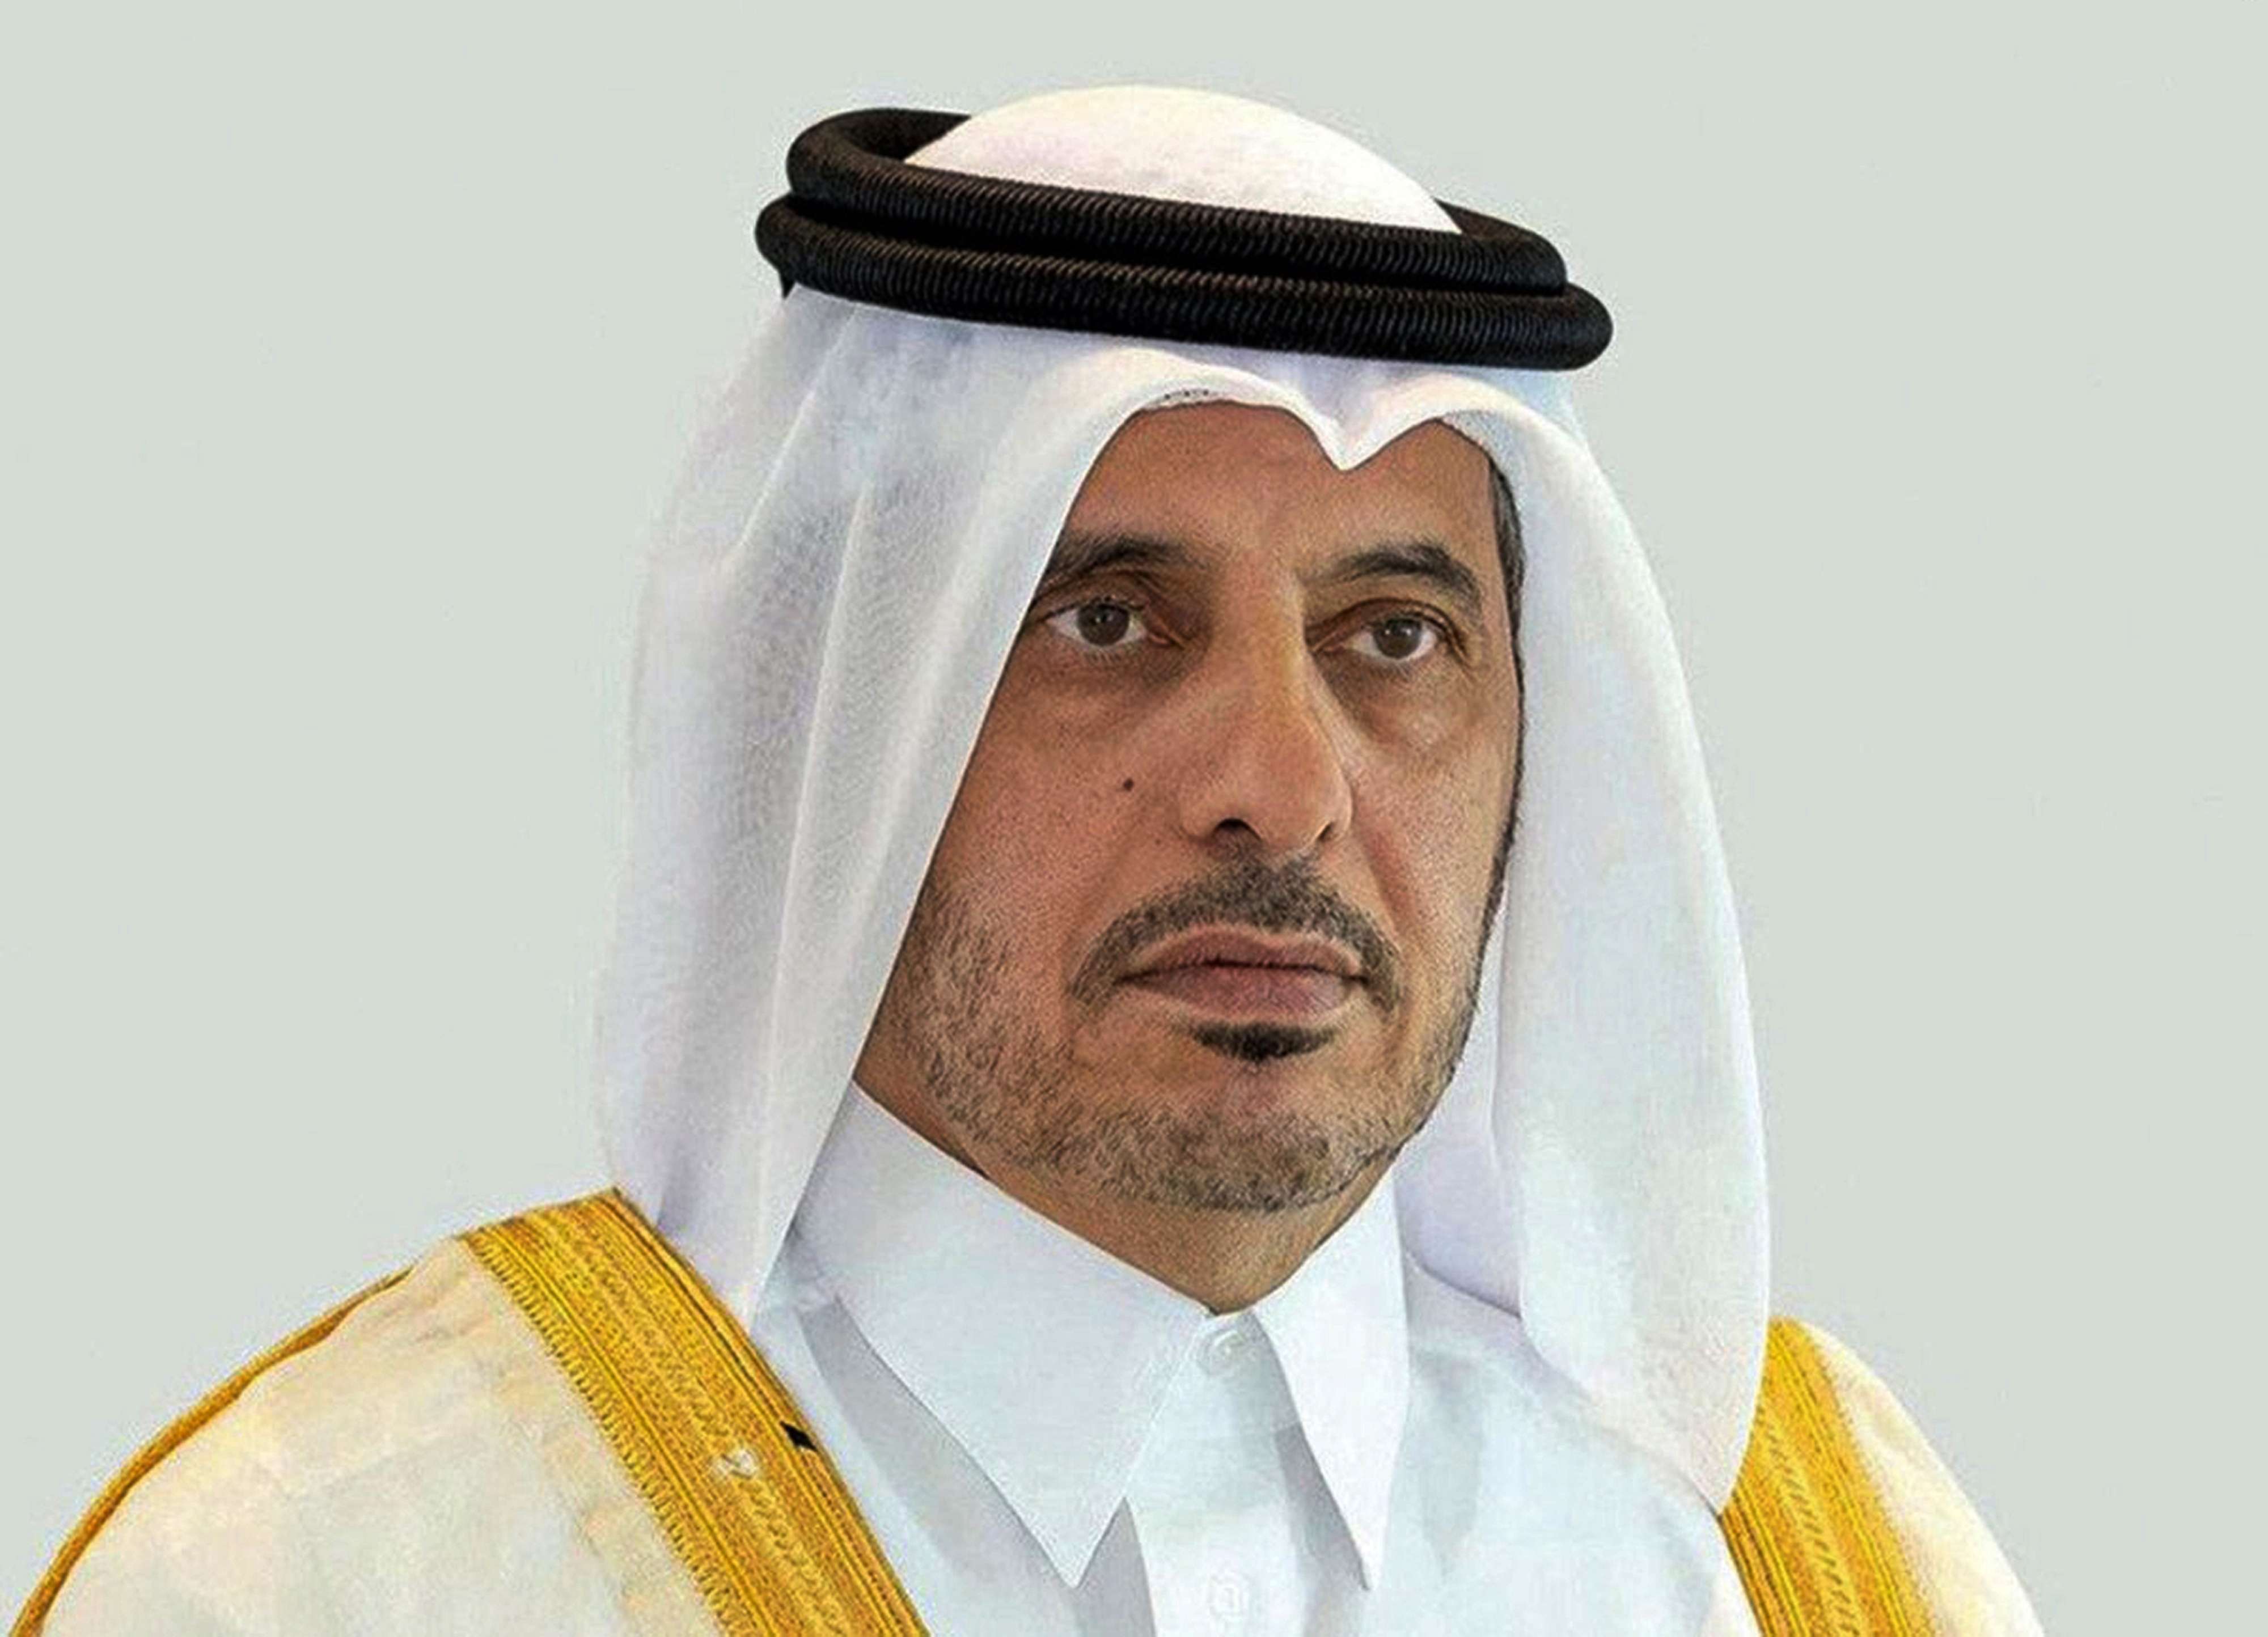 Qatari Prime Minister Sheikh Abdullah bin Nasser Al Thani